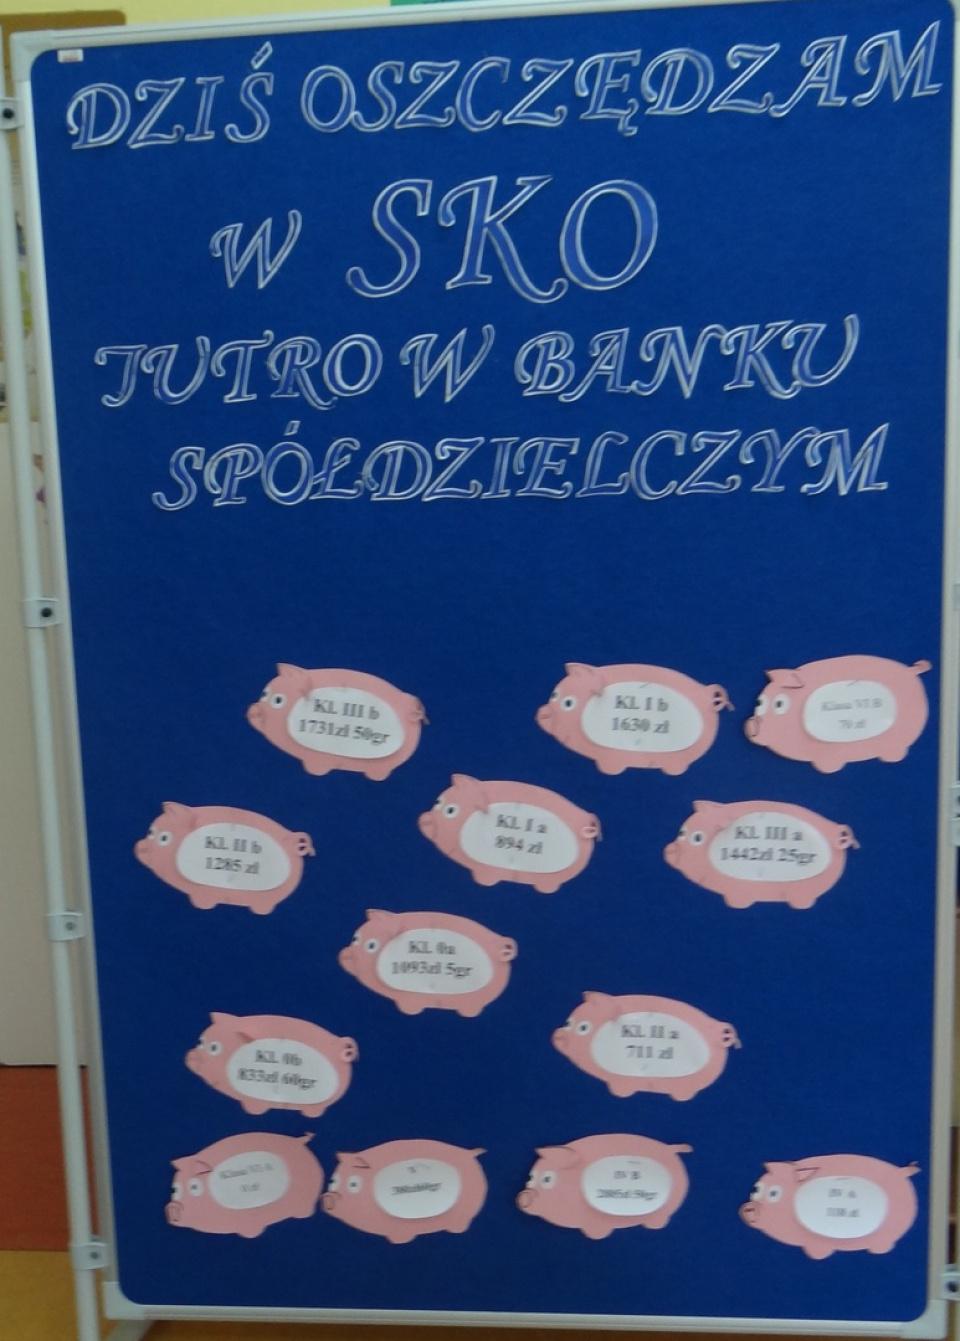 Konkurs "Wiadomości SKO"